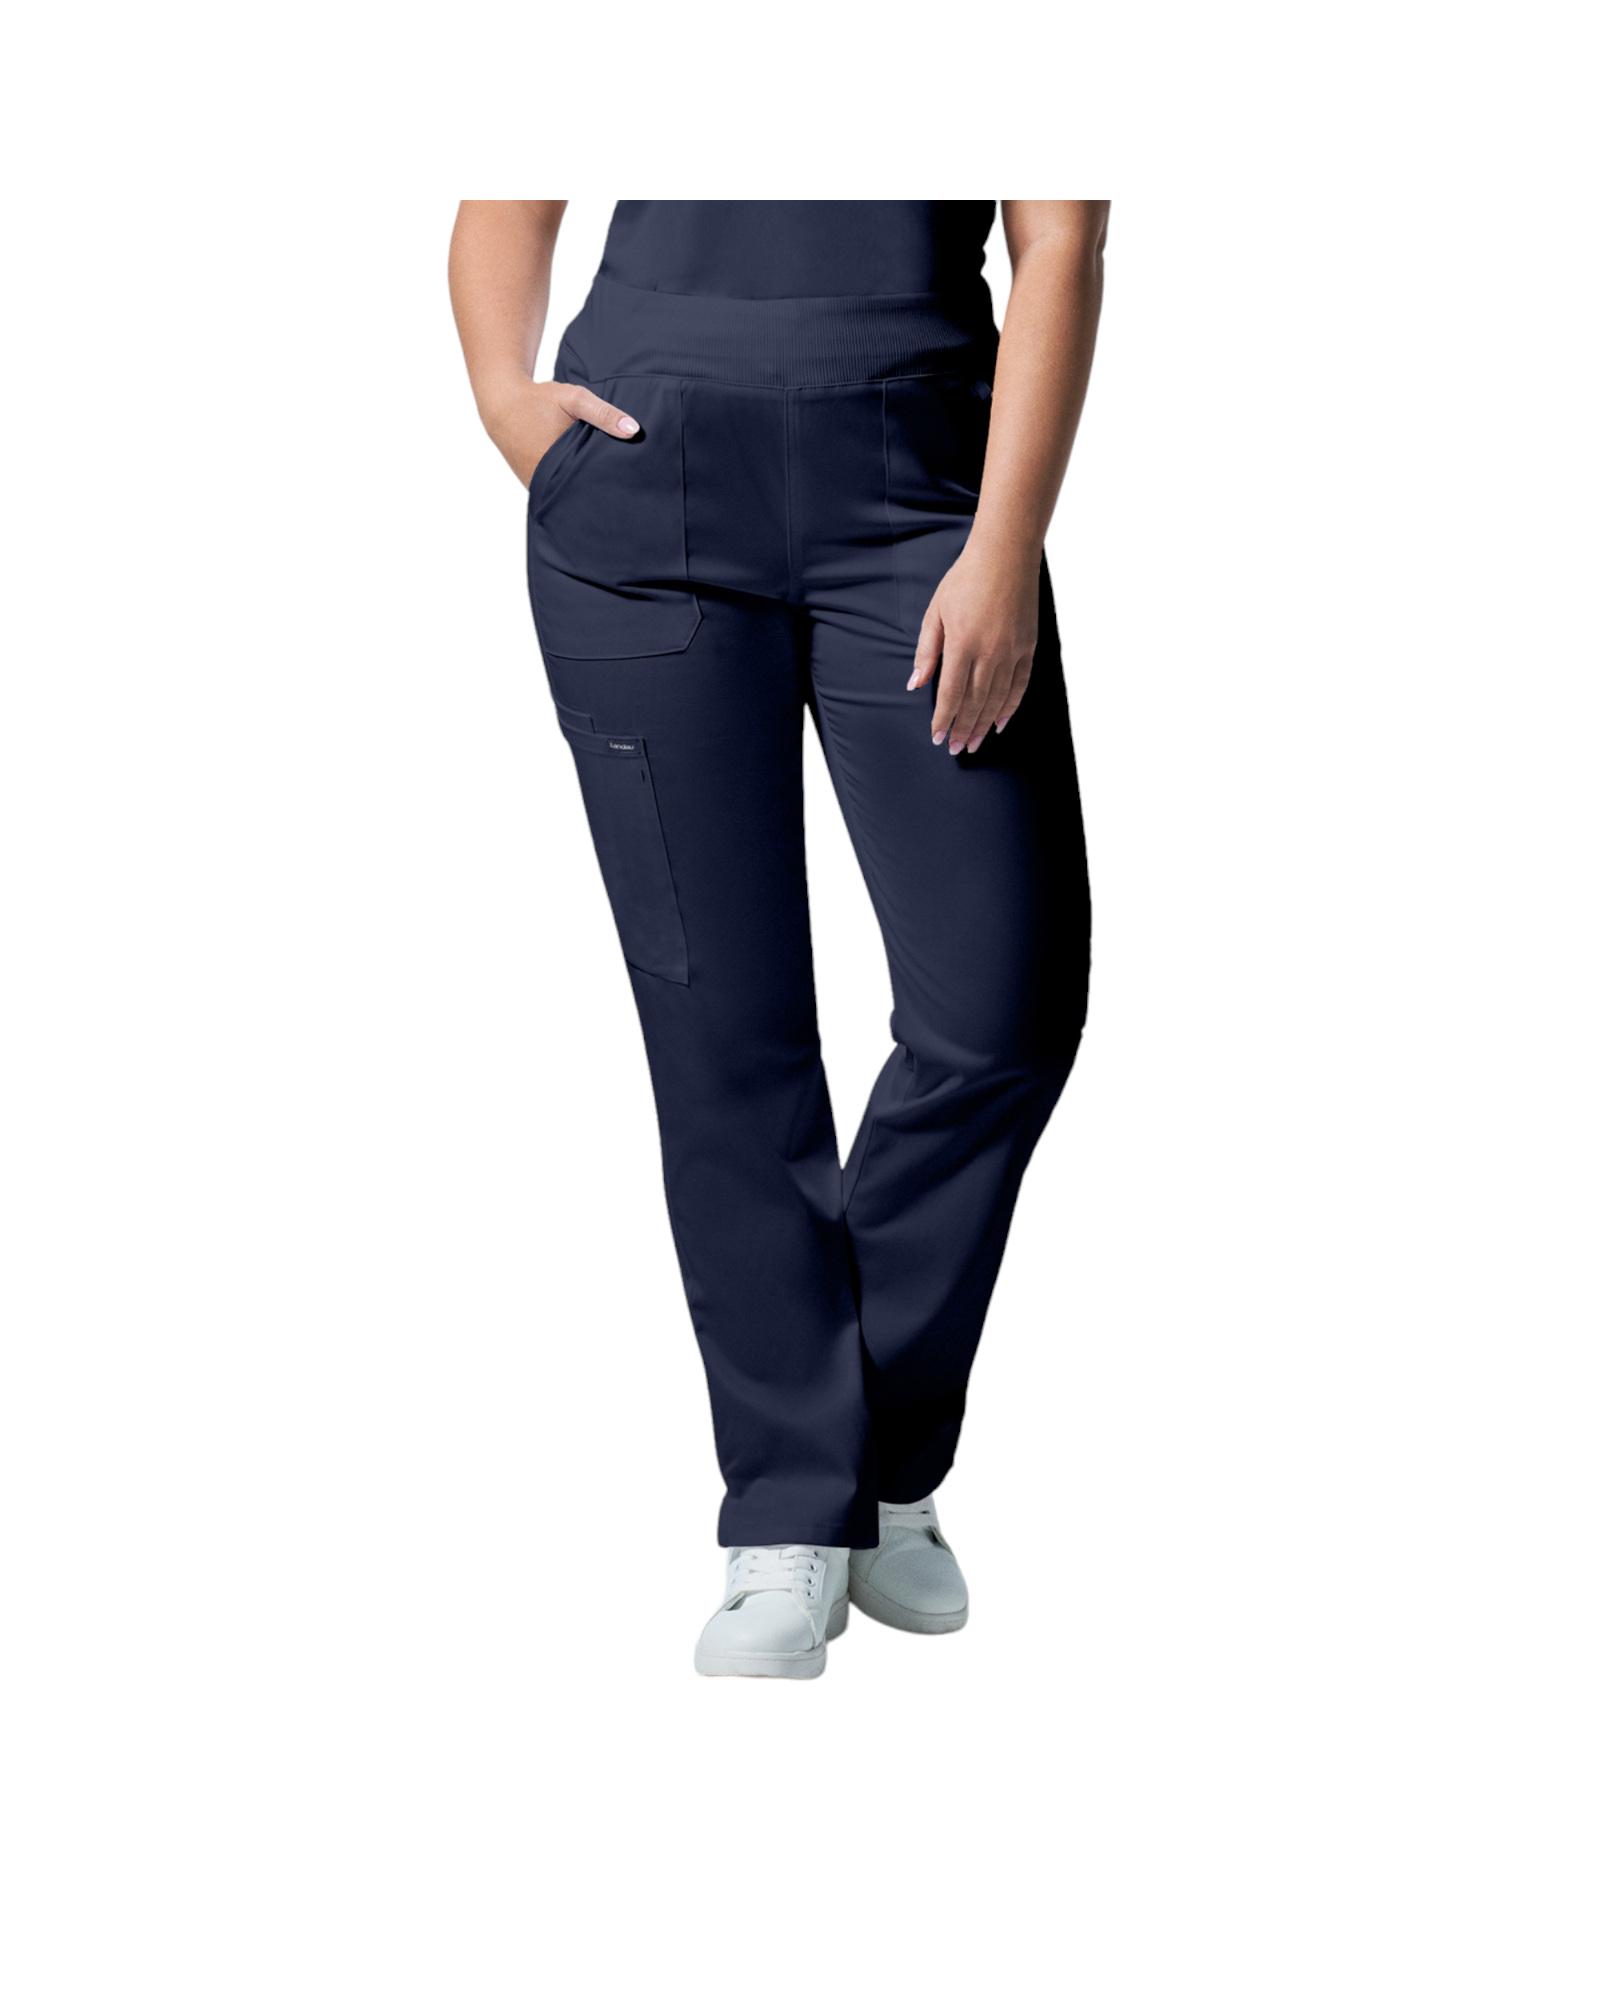 Pantalons  6 poches pour femmes Landau Proflex #LB405 couleur  Marine